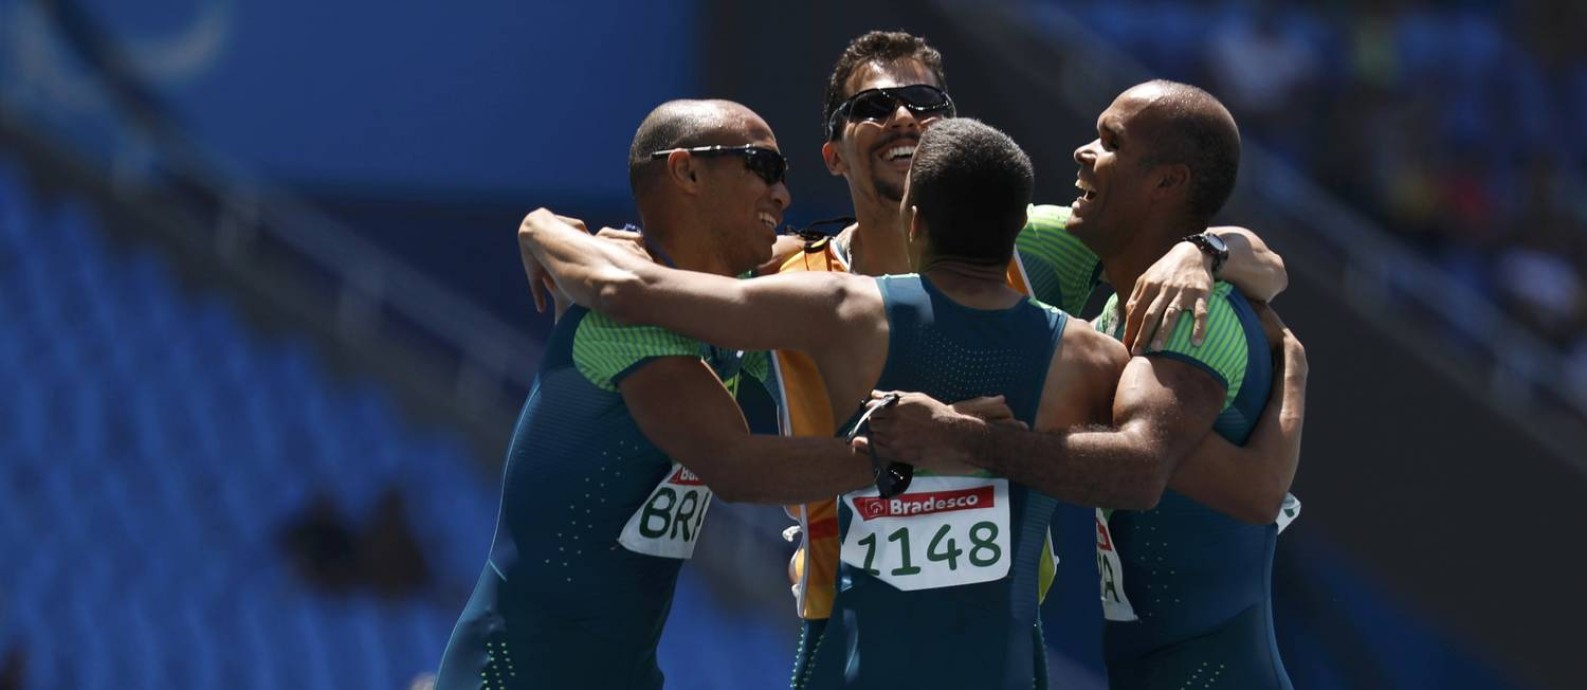 Um dos dois guias e três dos quatro corredores da equipe brasileira de revezamento festejam o ouro no 4x100m da classe T11-13 Foto: RICARDO MORAES / REUTERS